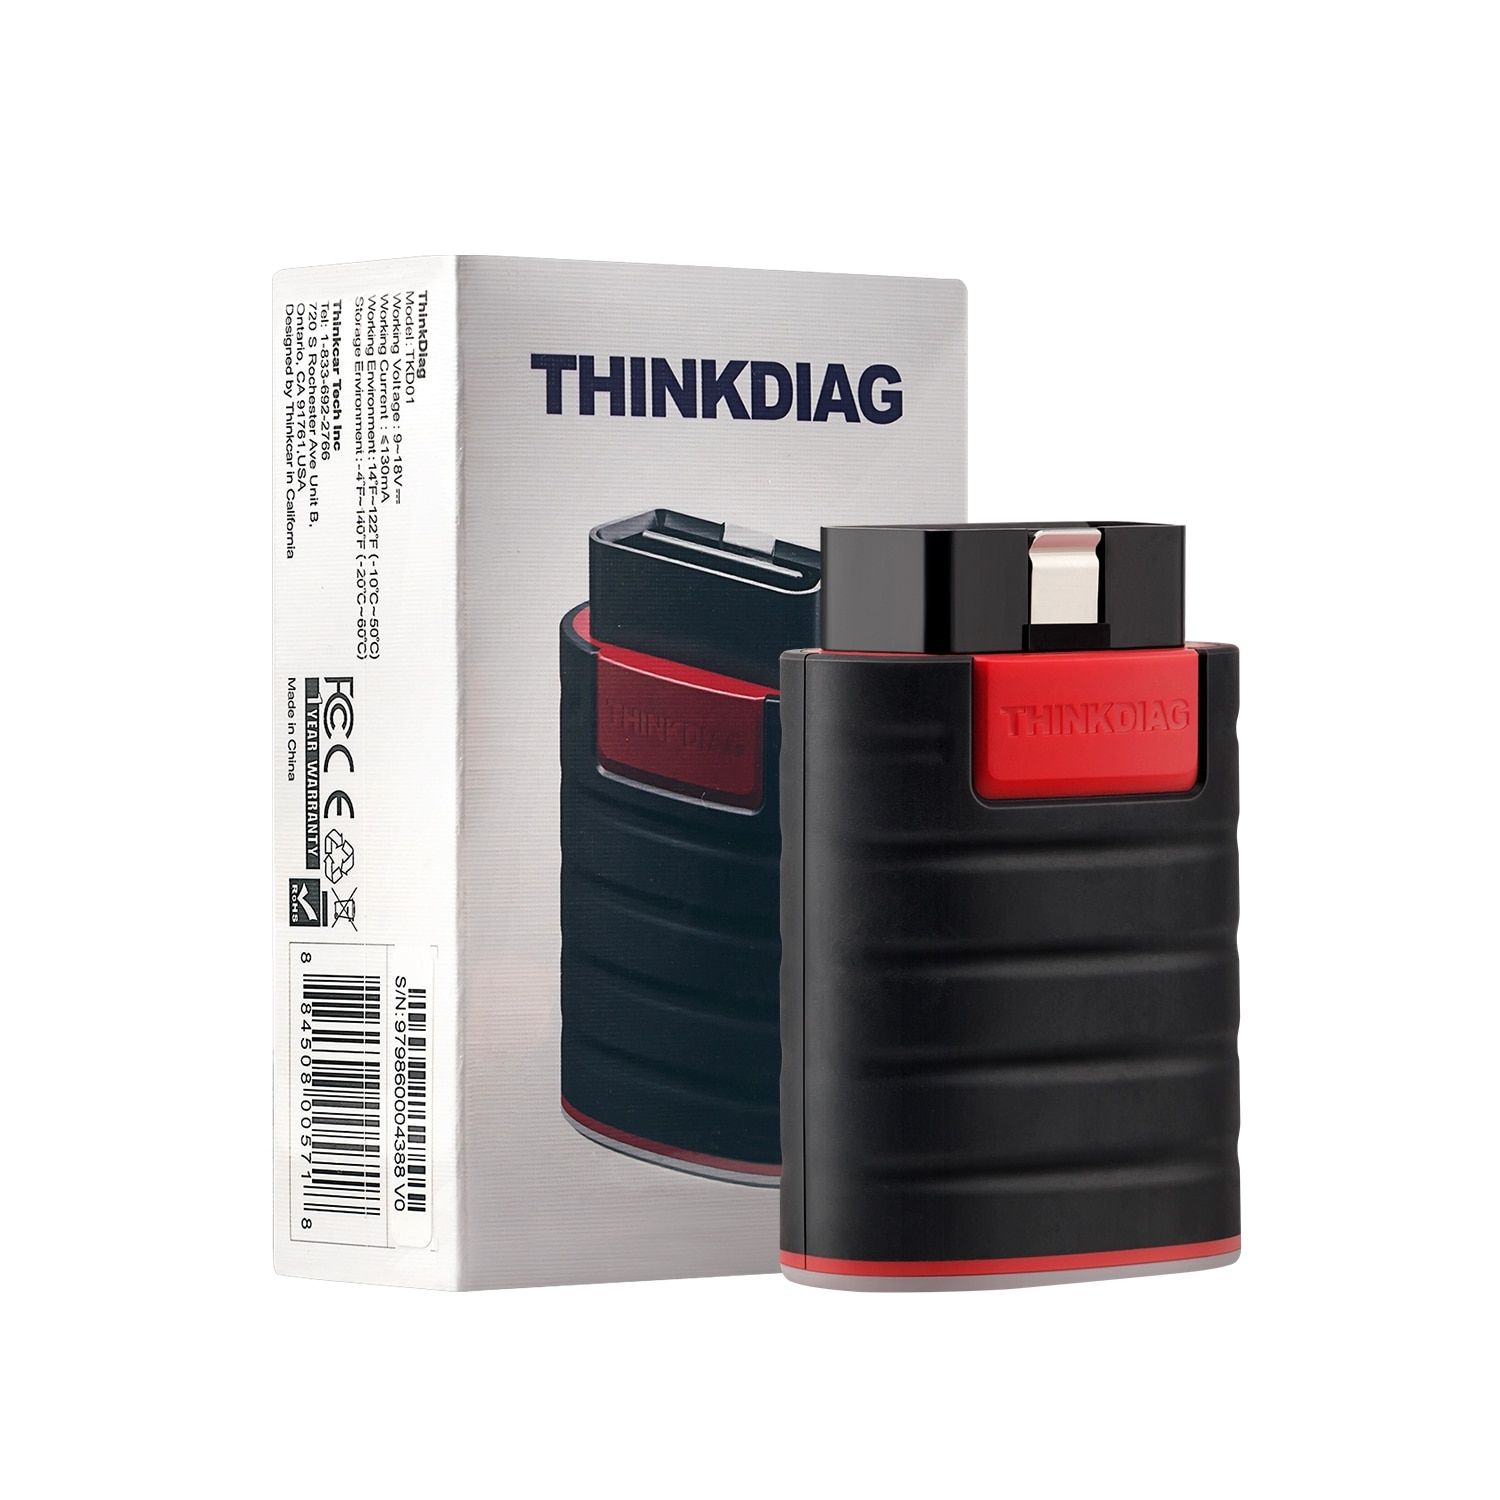 10pcs/lot Thinkcar Thinkdiag New Boot Full Software Rese